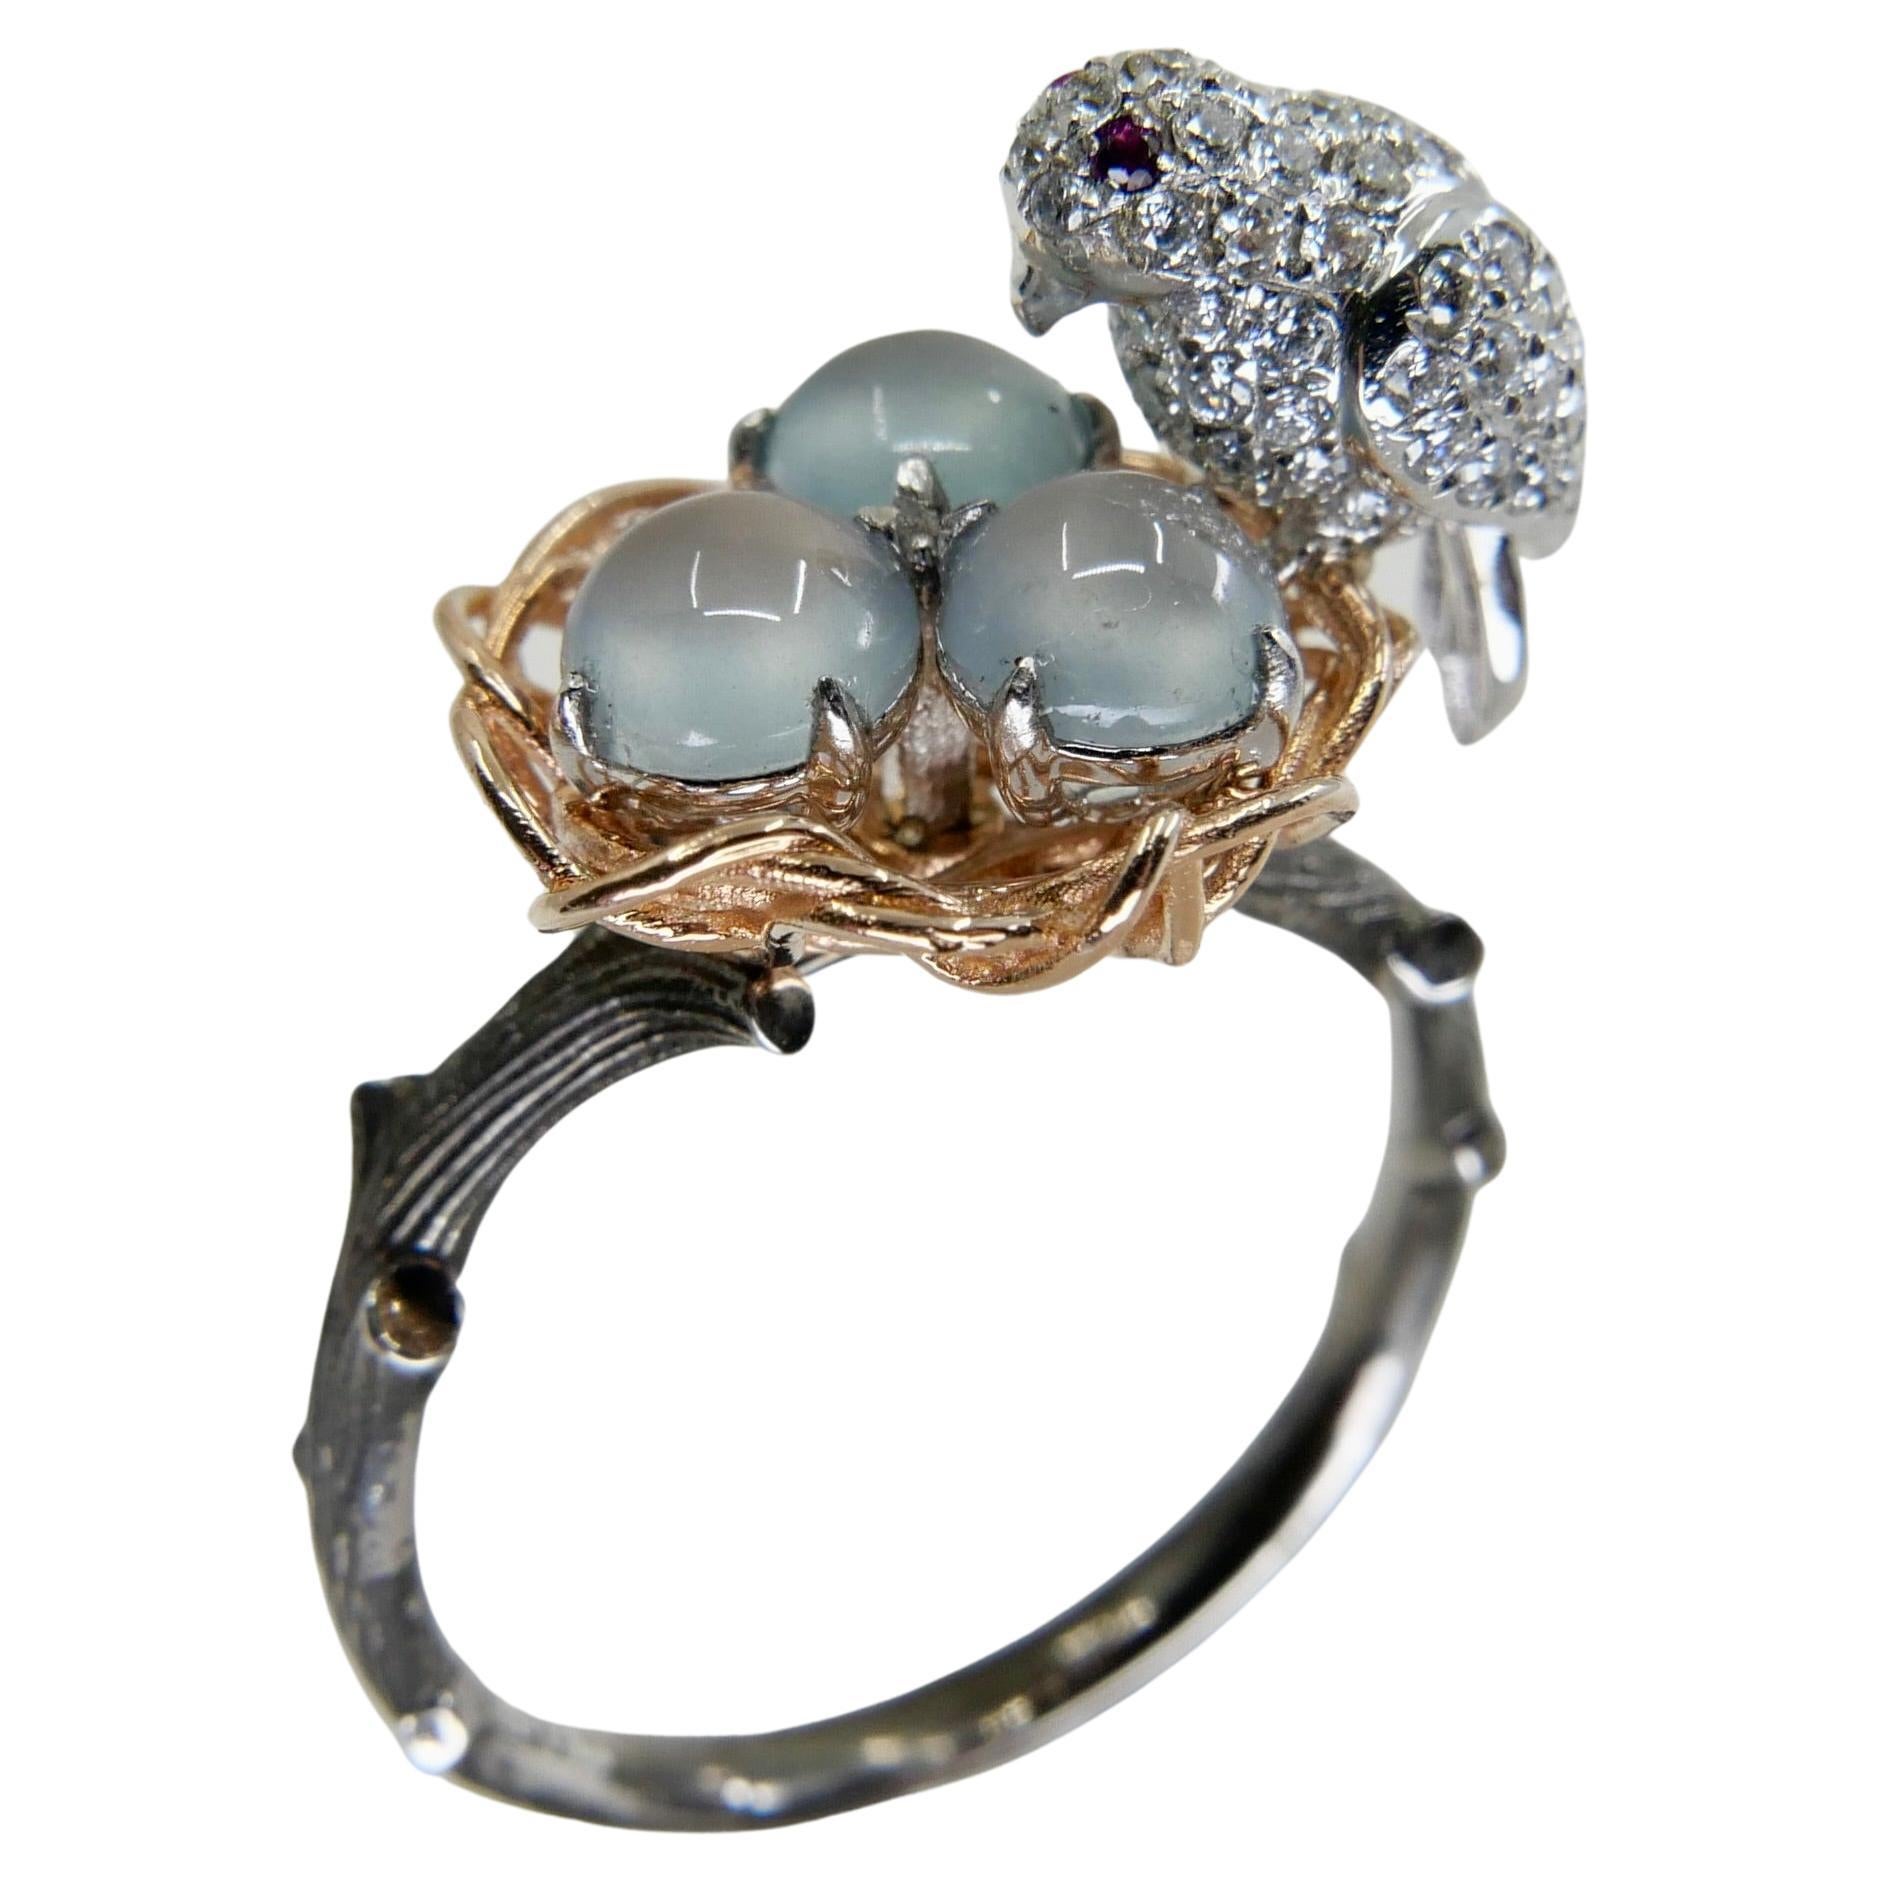 Birds Nest Ring - 6 For Sale on 1stDibs | bird nest ring, egg 